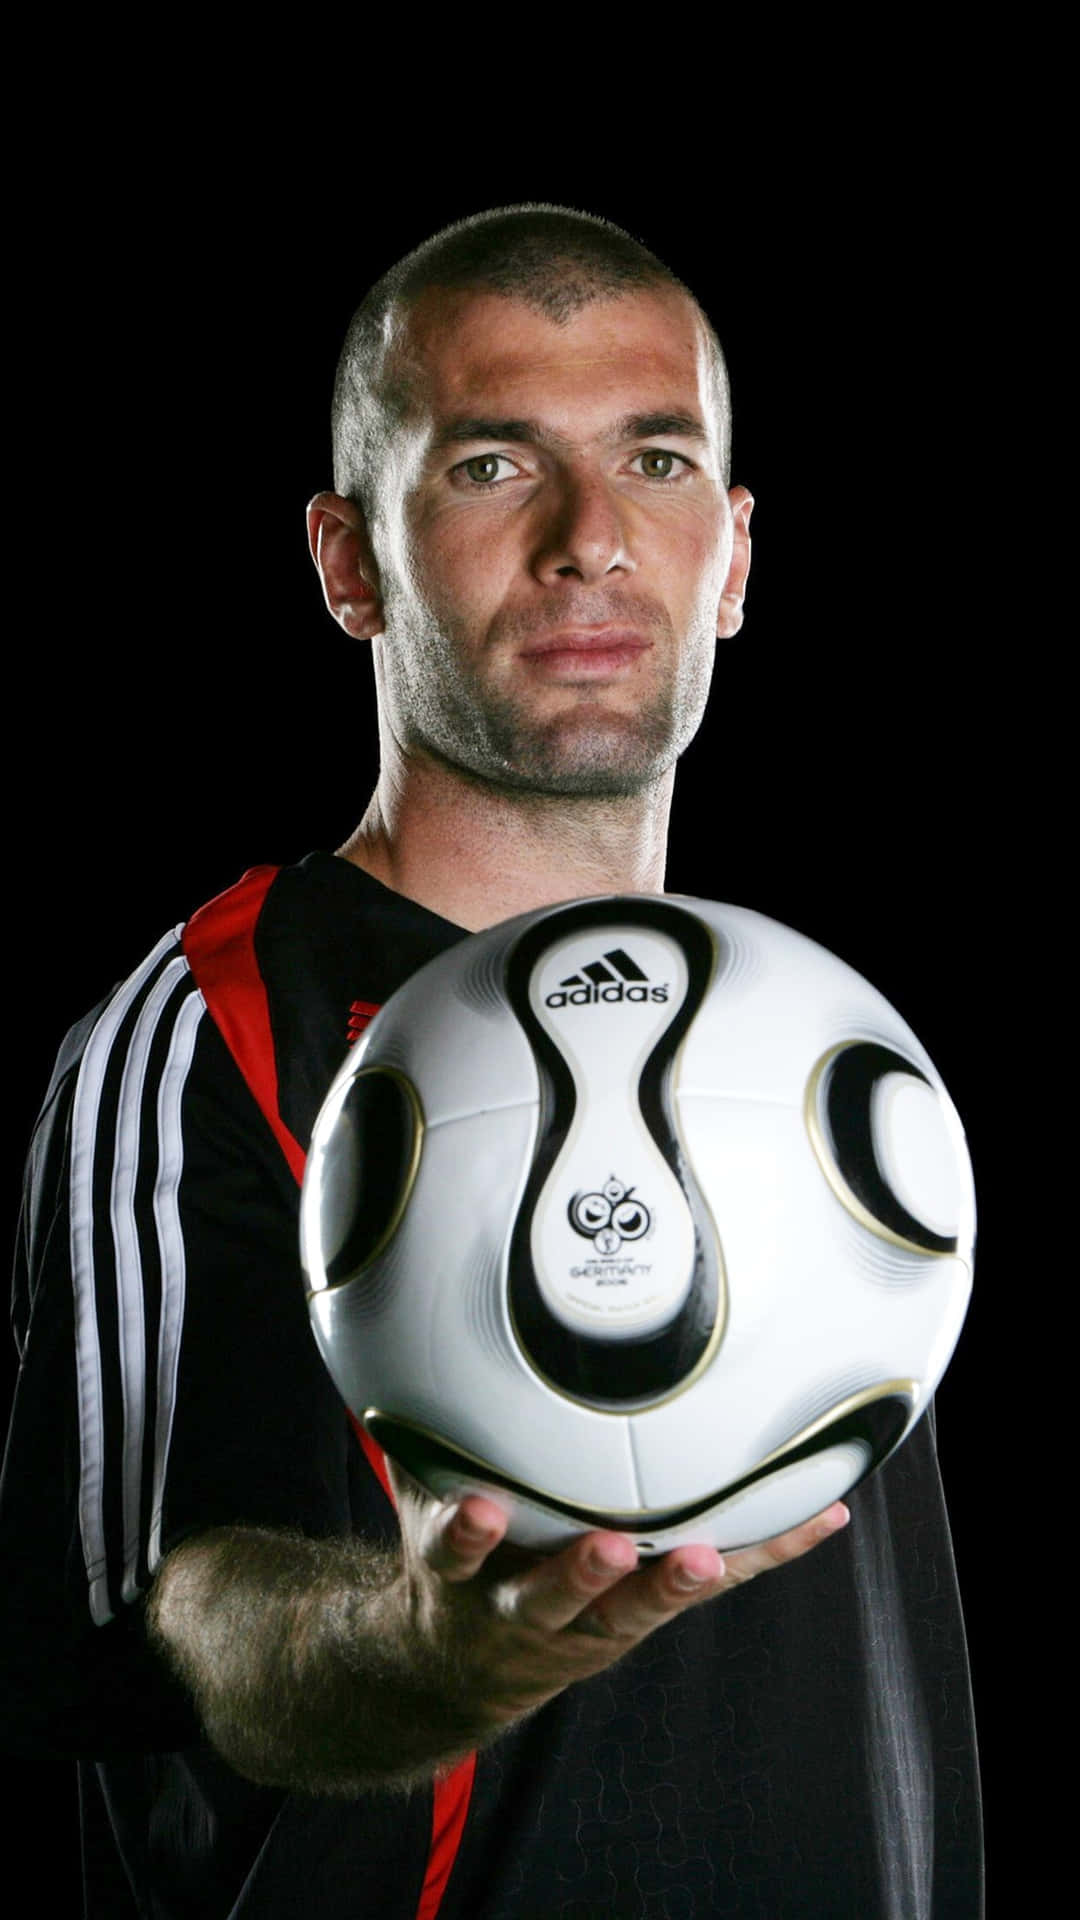 Fotografiadel Profilo Calcistico Di Zinedine Zidane Sfondo